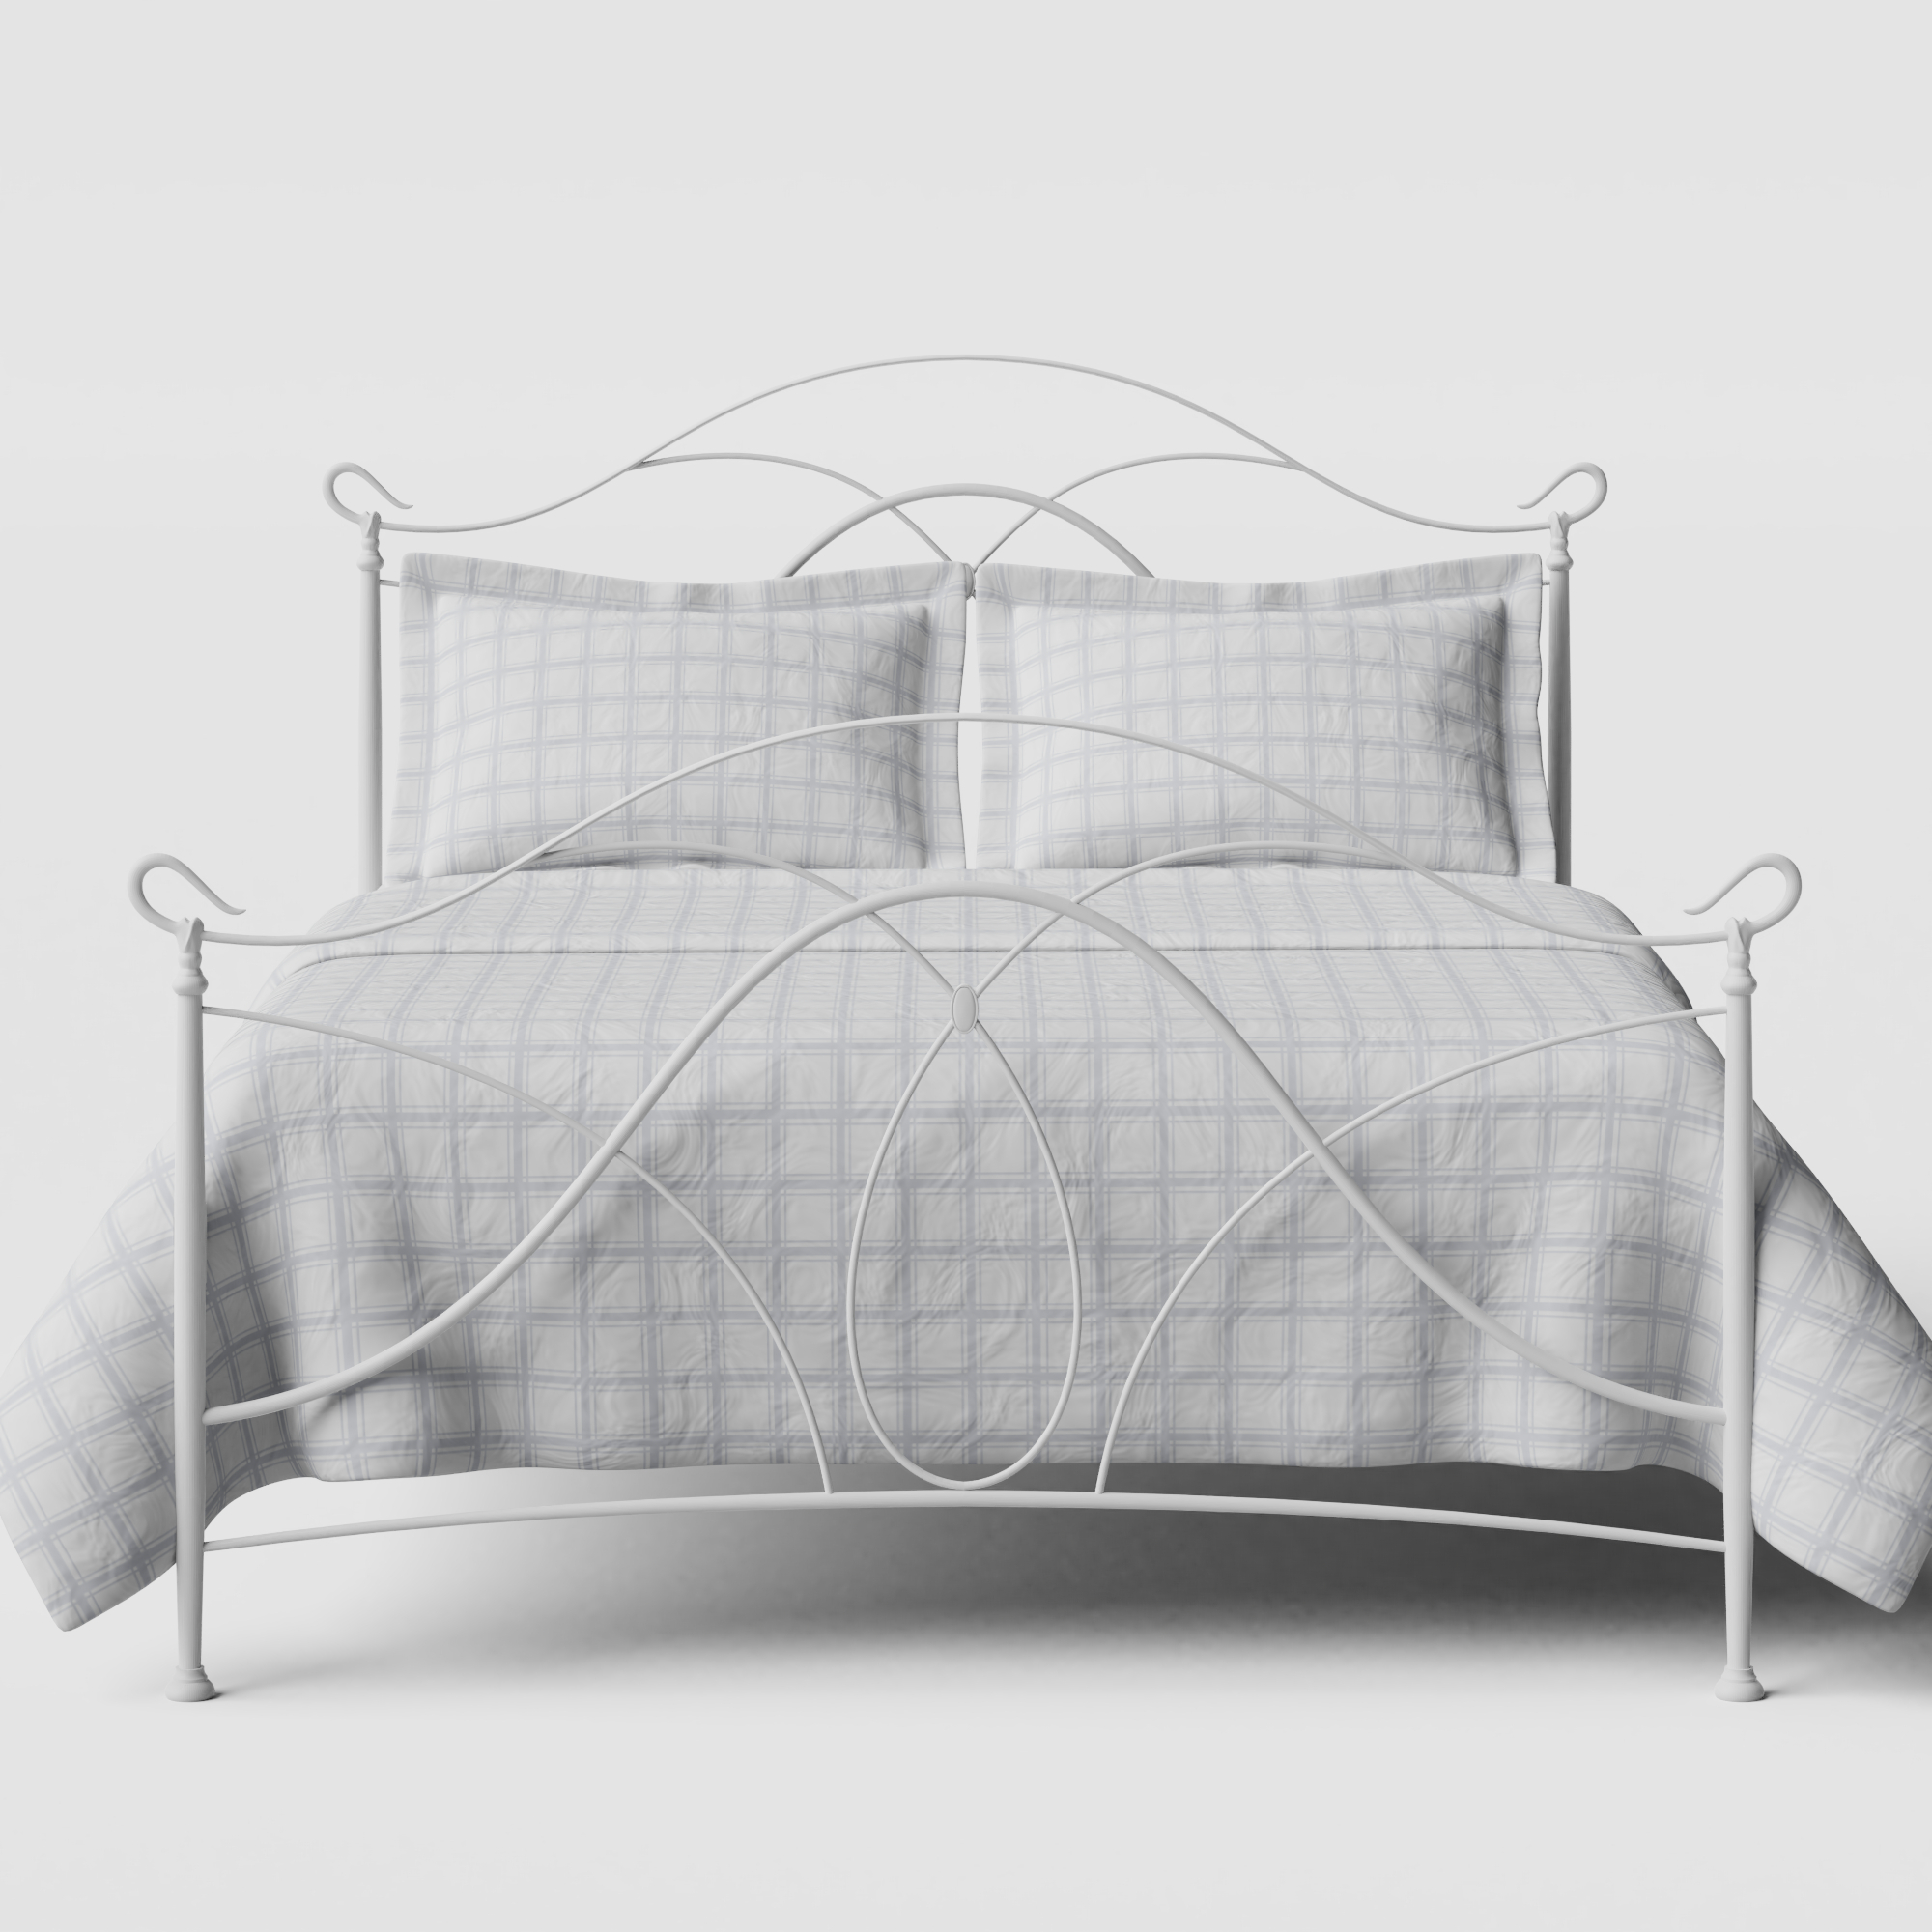 Ardo iron/metal bed in white